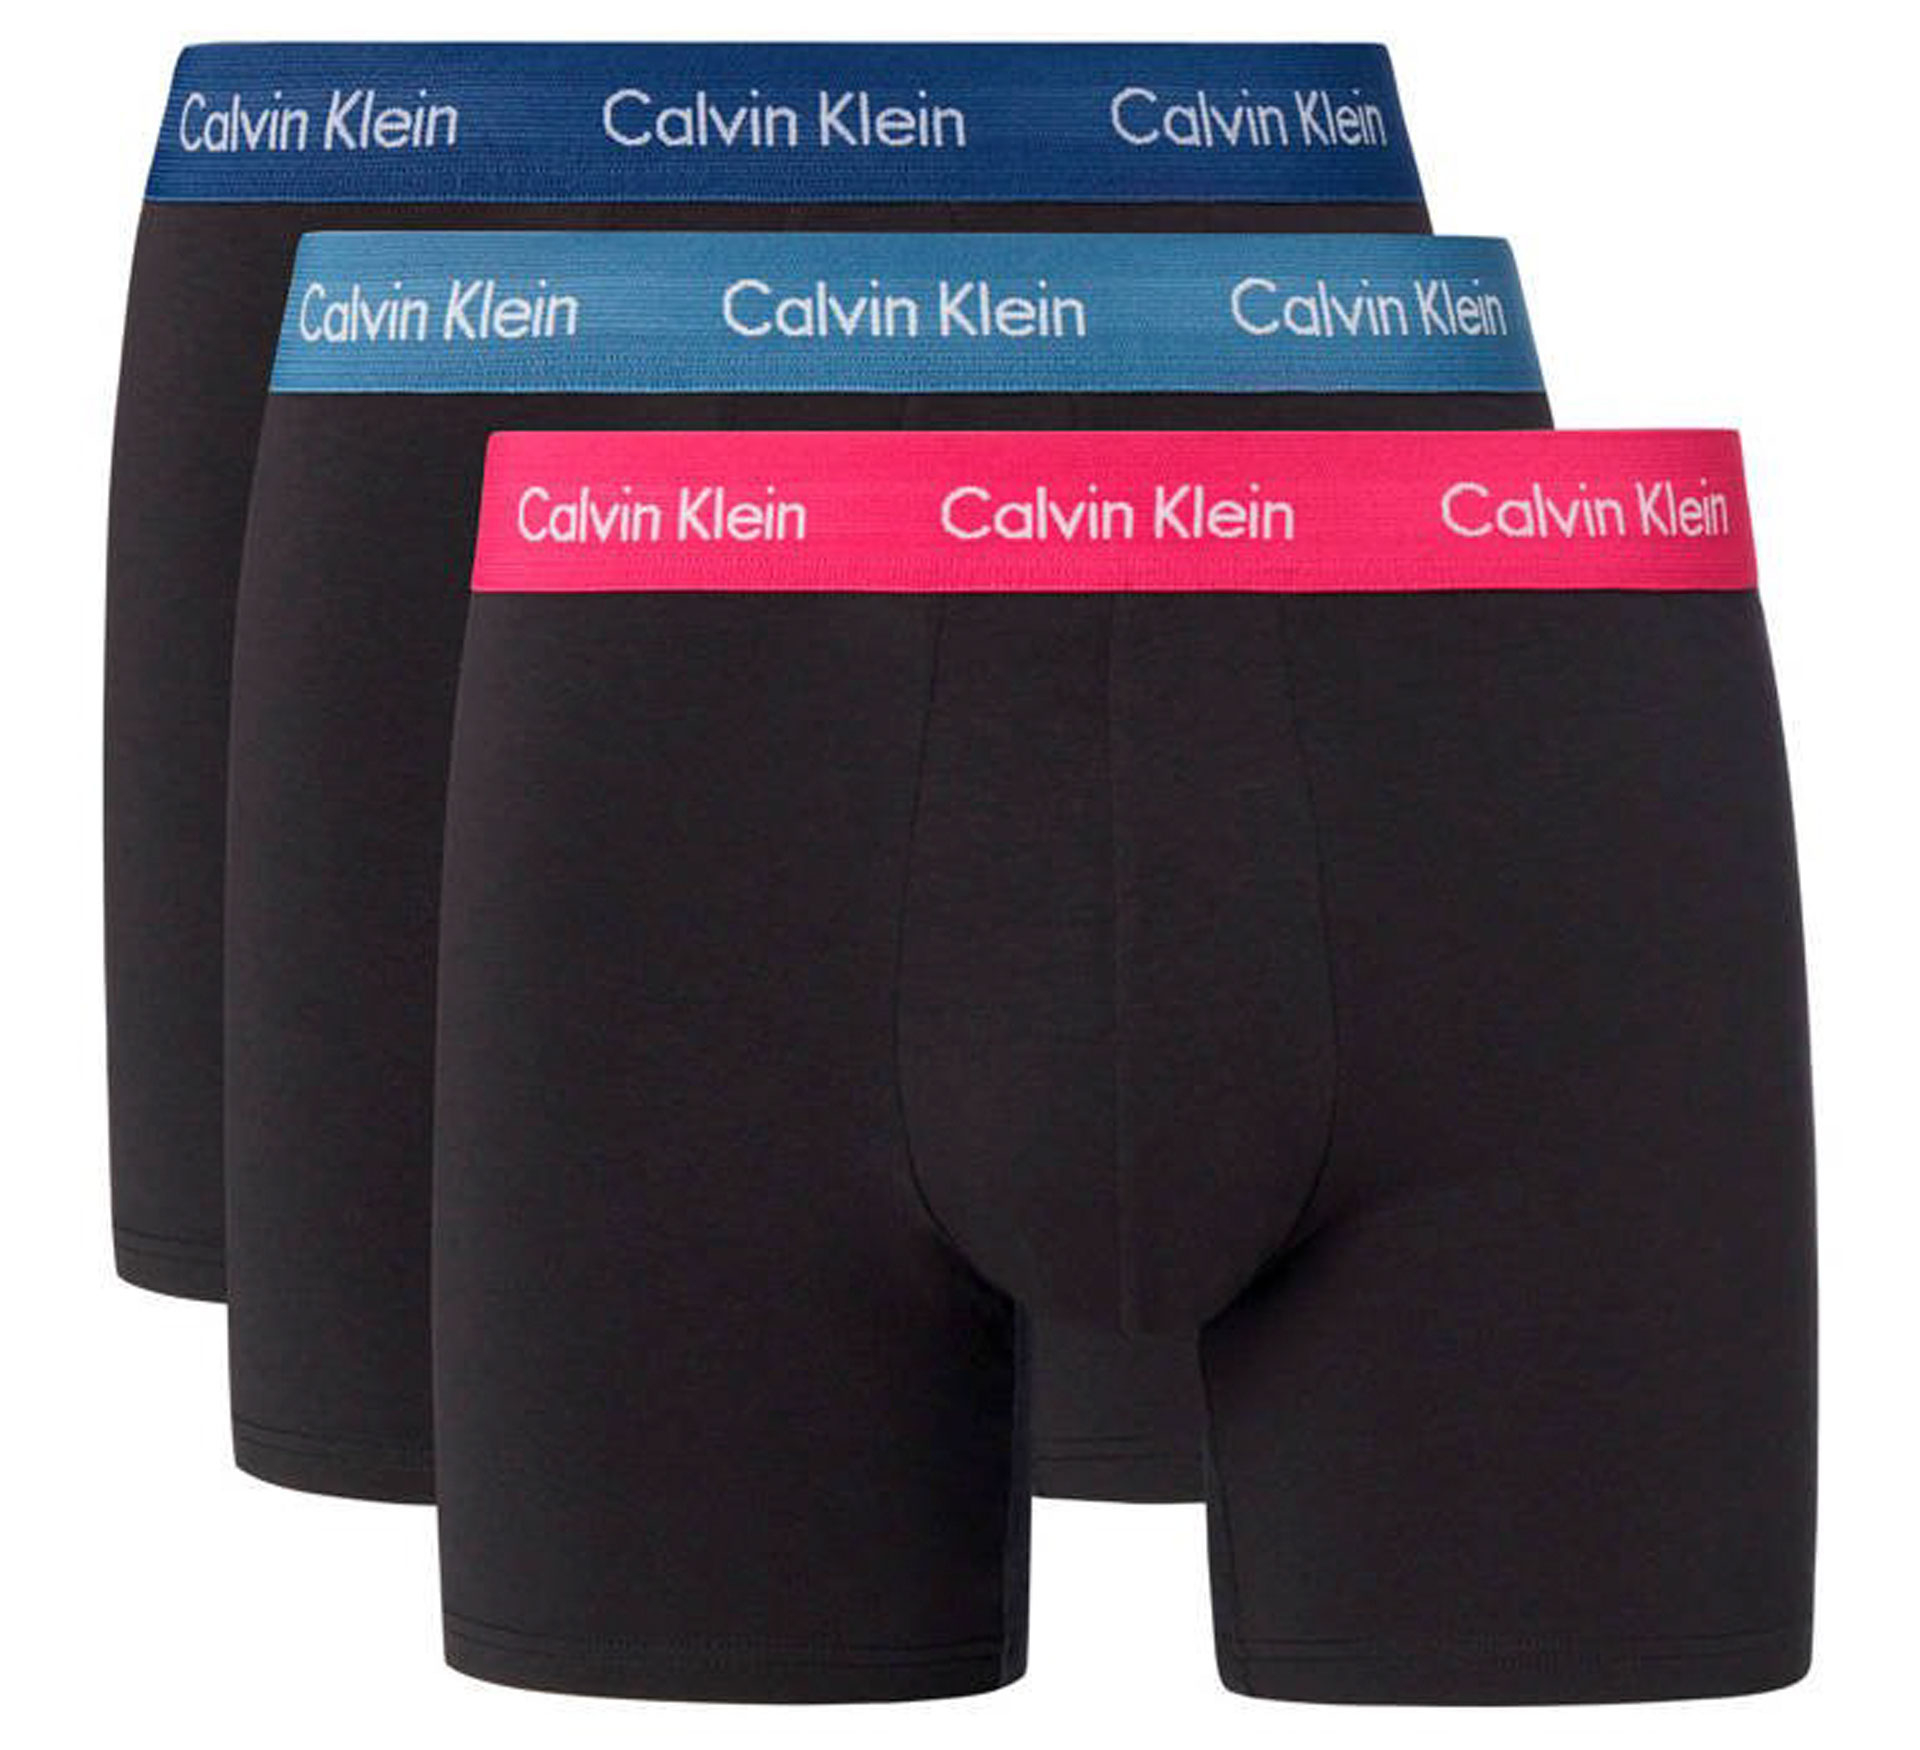 Boxershorts Calvin Klein Brief (lot de 3)